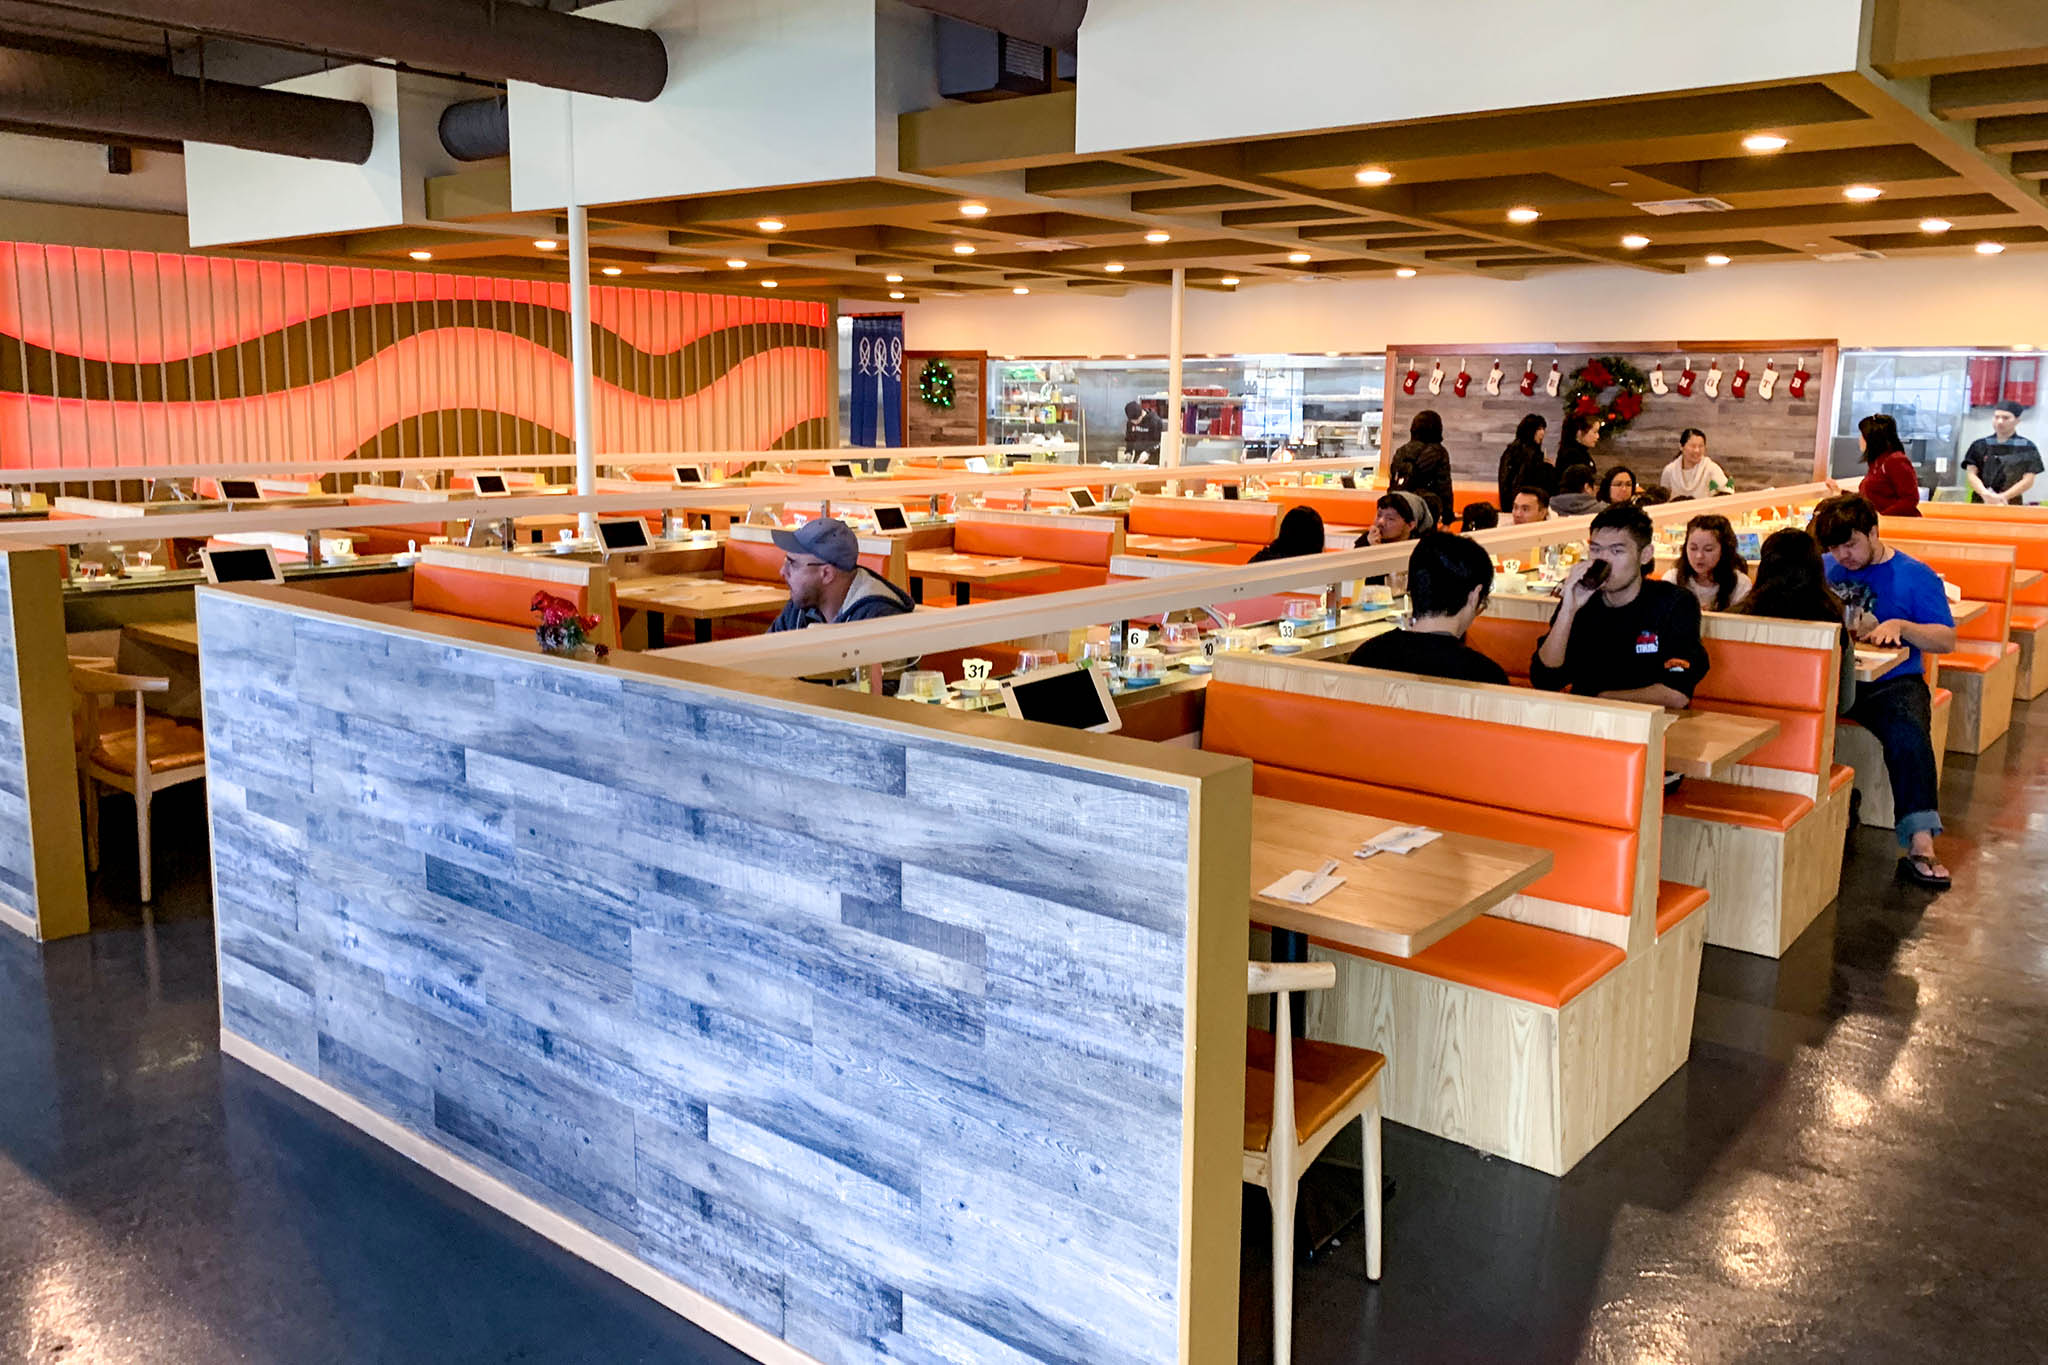 mikami bar and revolving sushi reviews